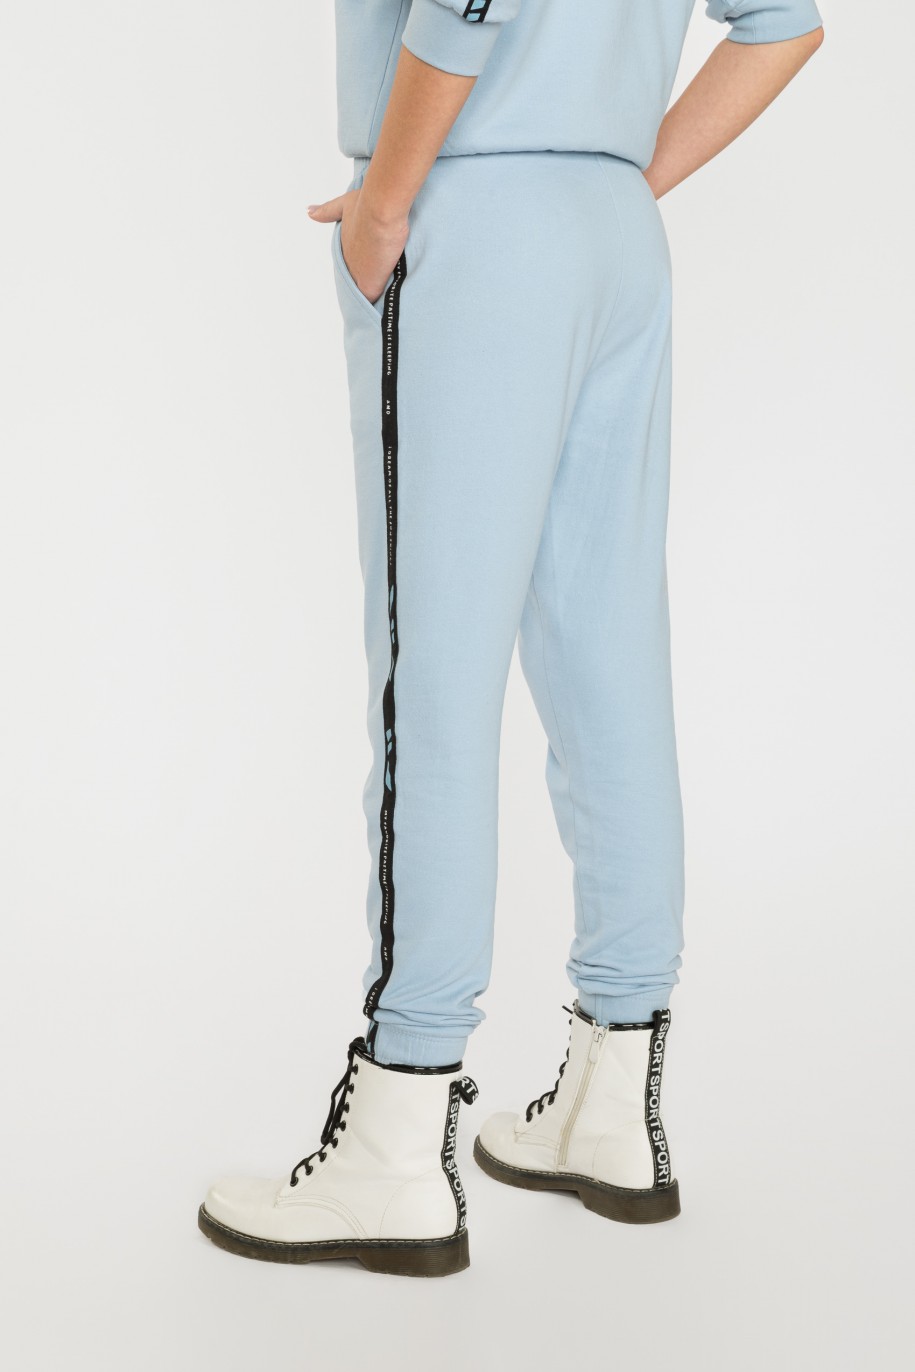 Błękitne spodnie dresowe z lampasami - 39992